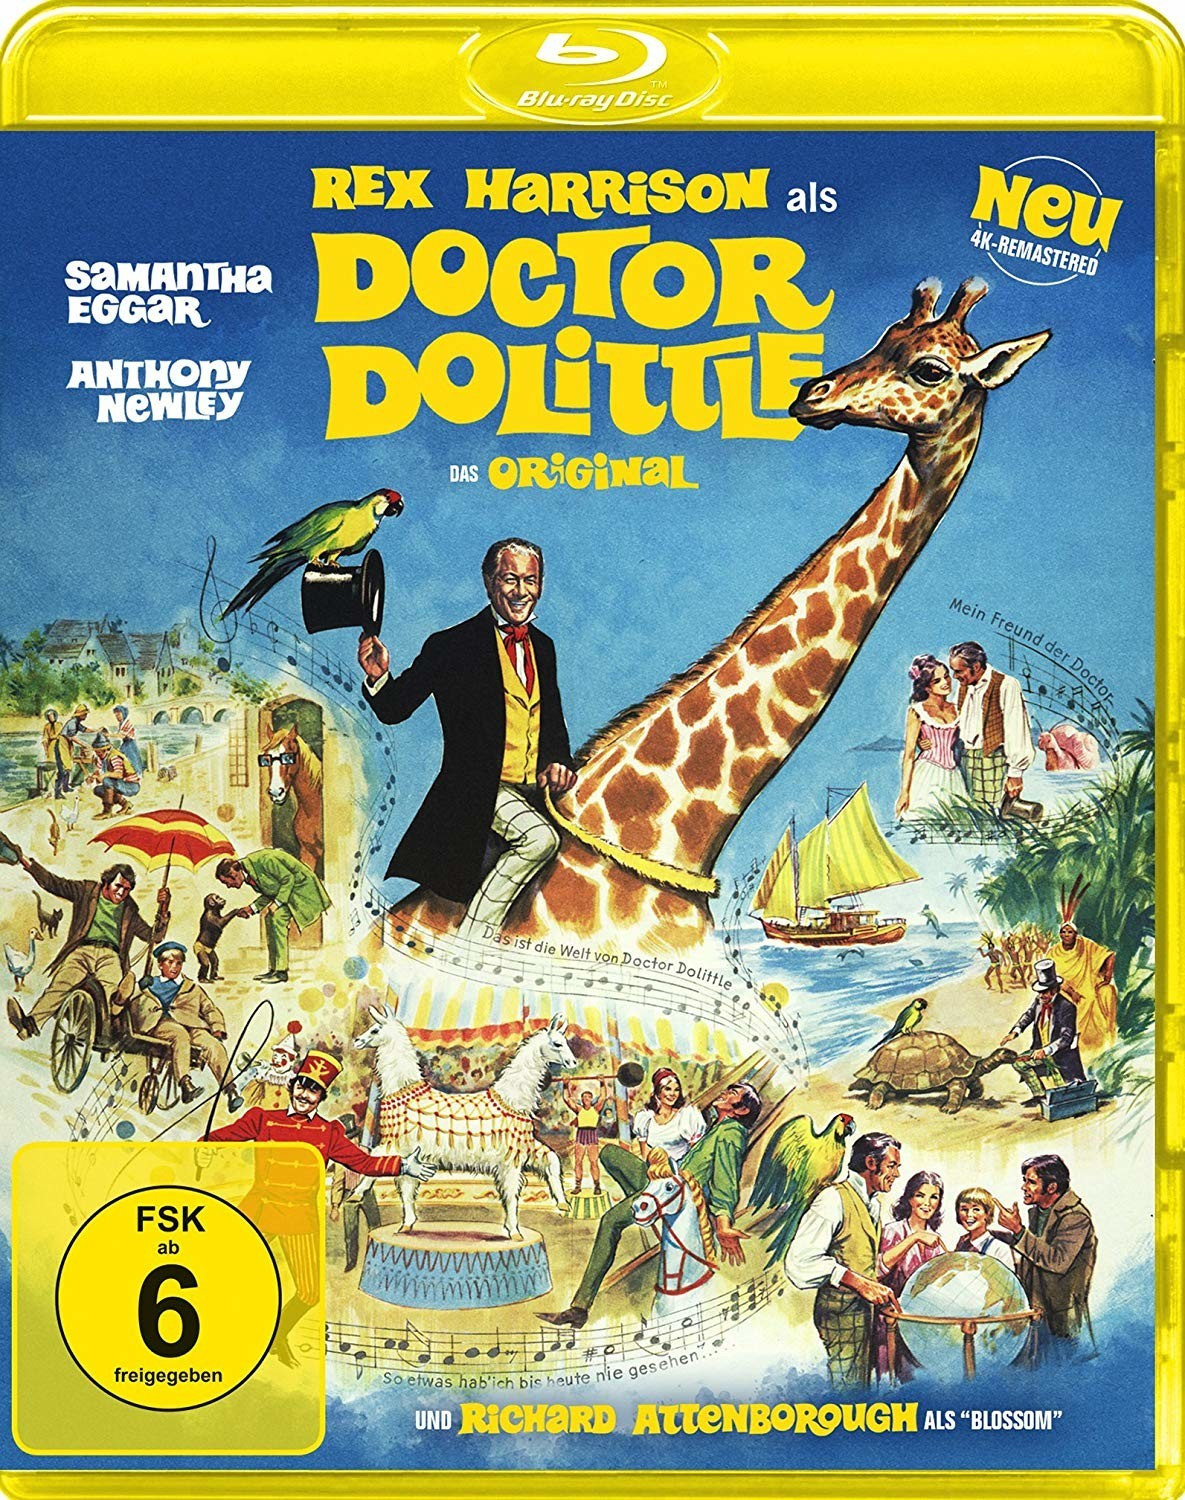 #Doctor Dolittle – Das Original (4K-remastered) [Blu-ray]#